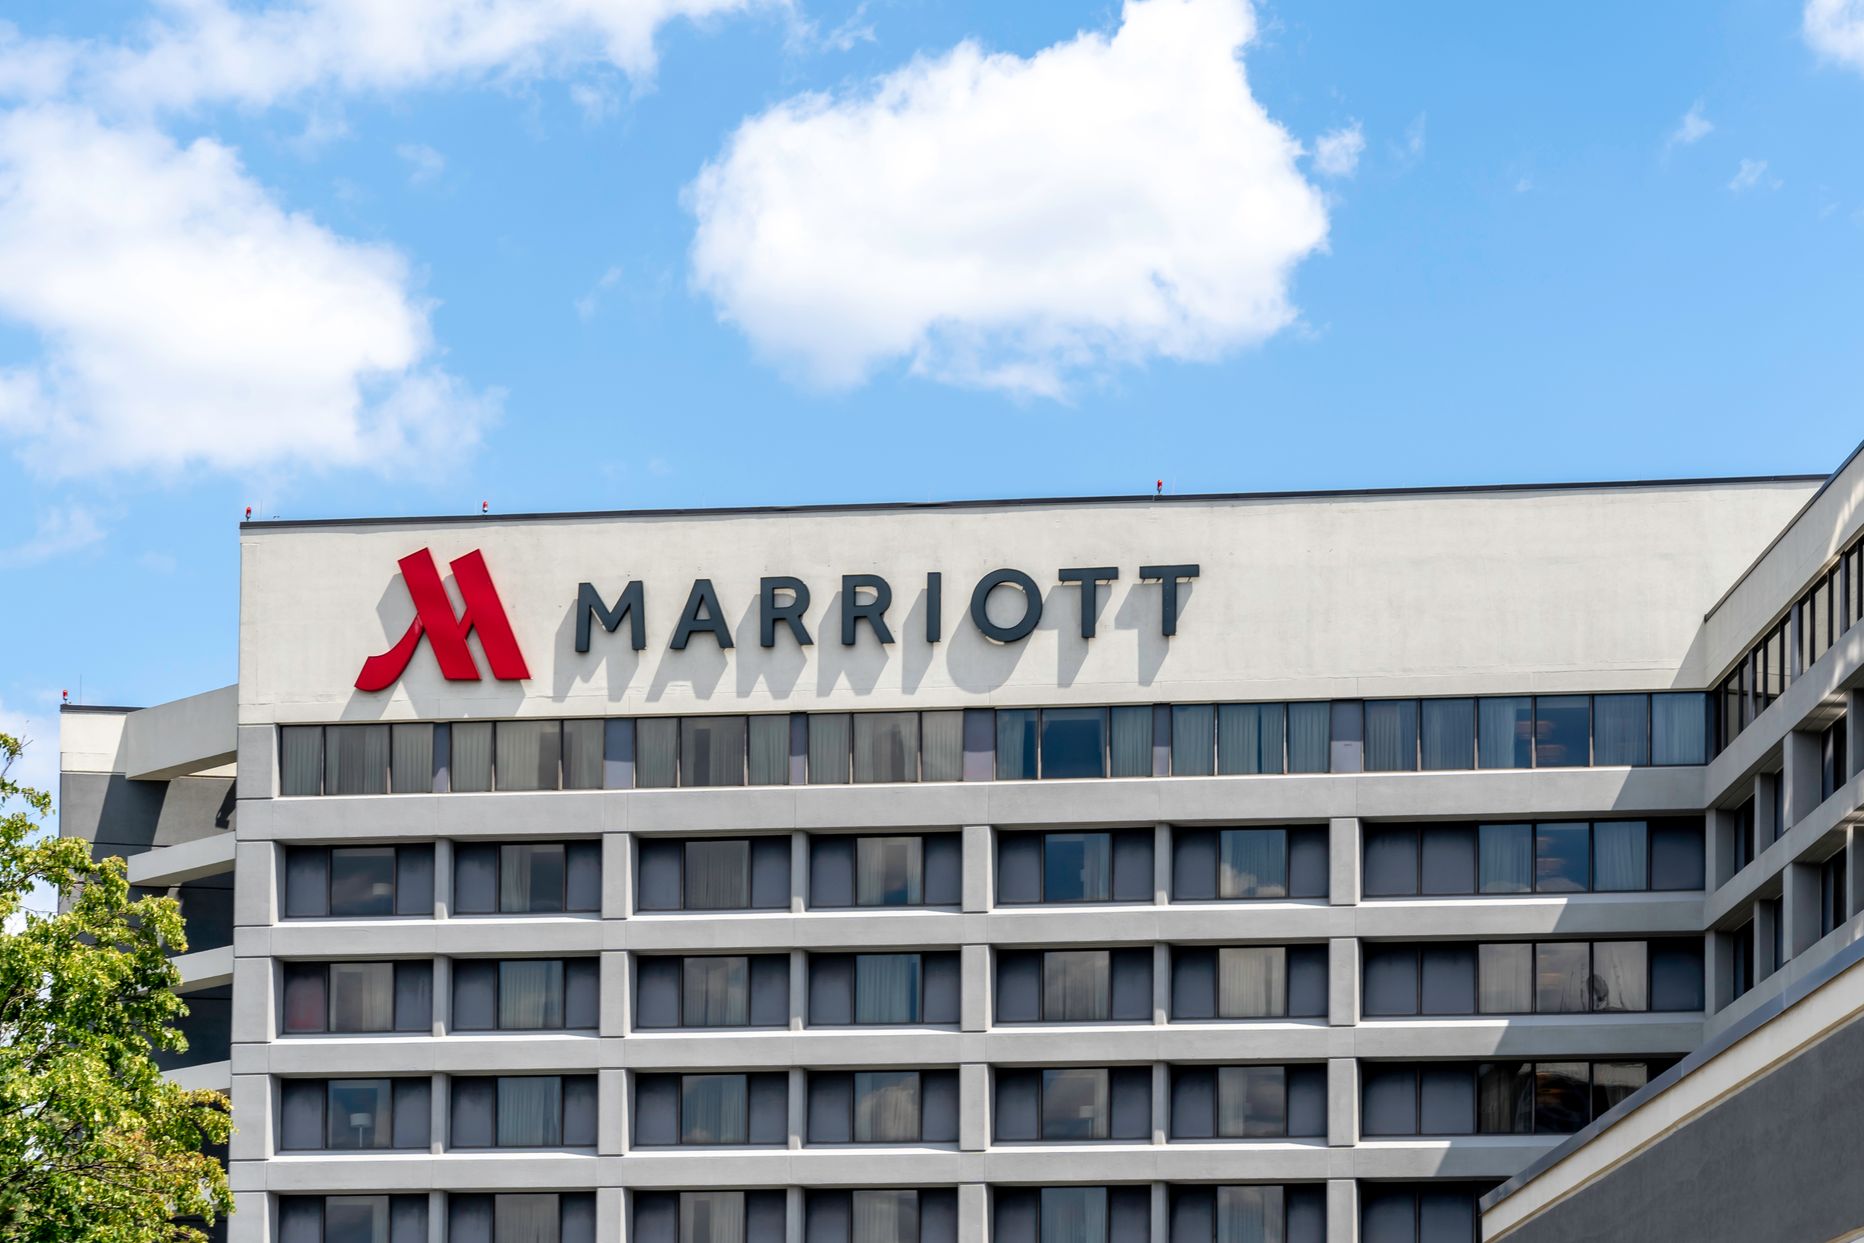 "Marriott" viesnīca.